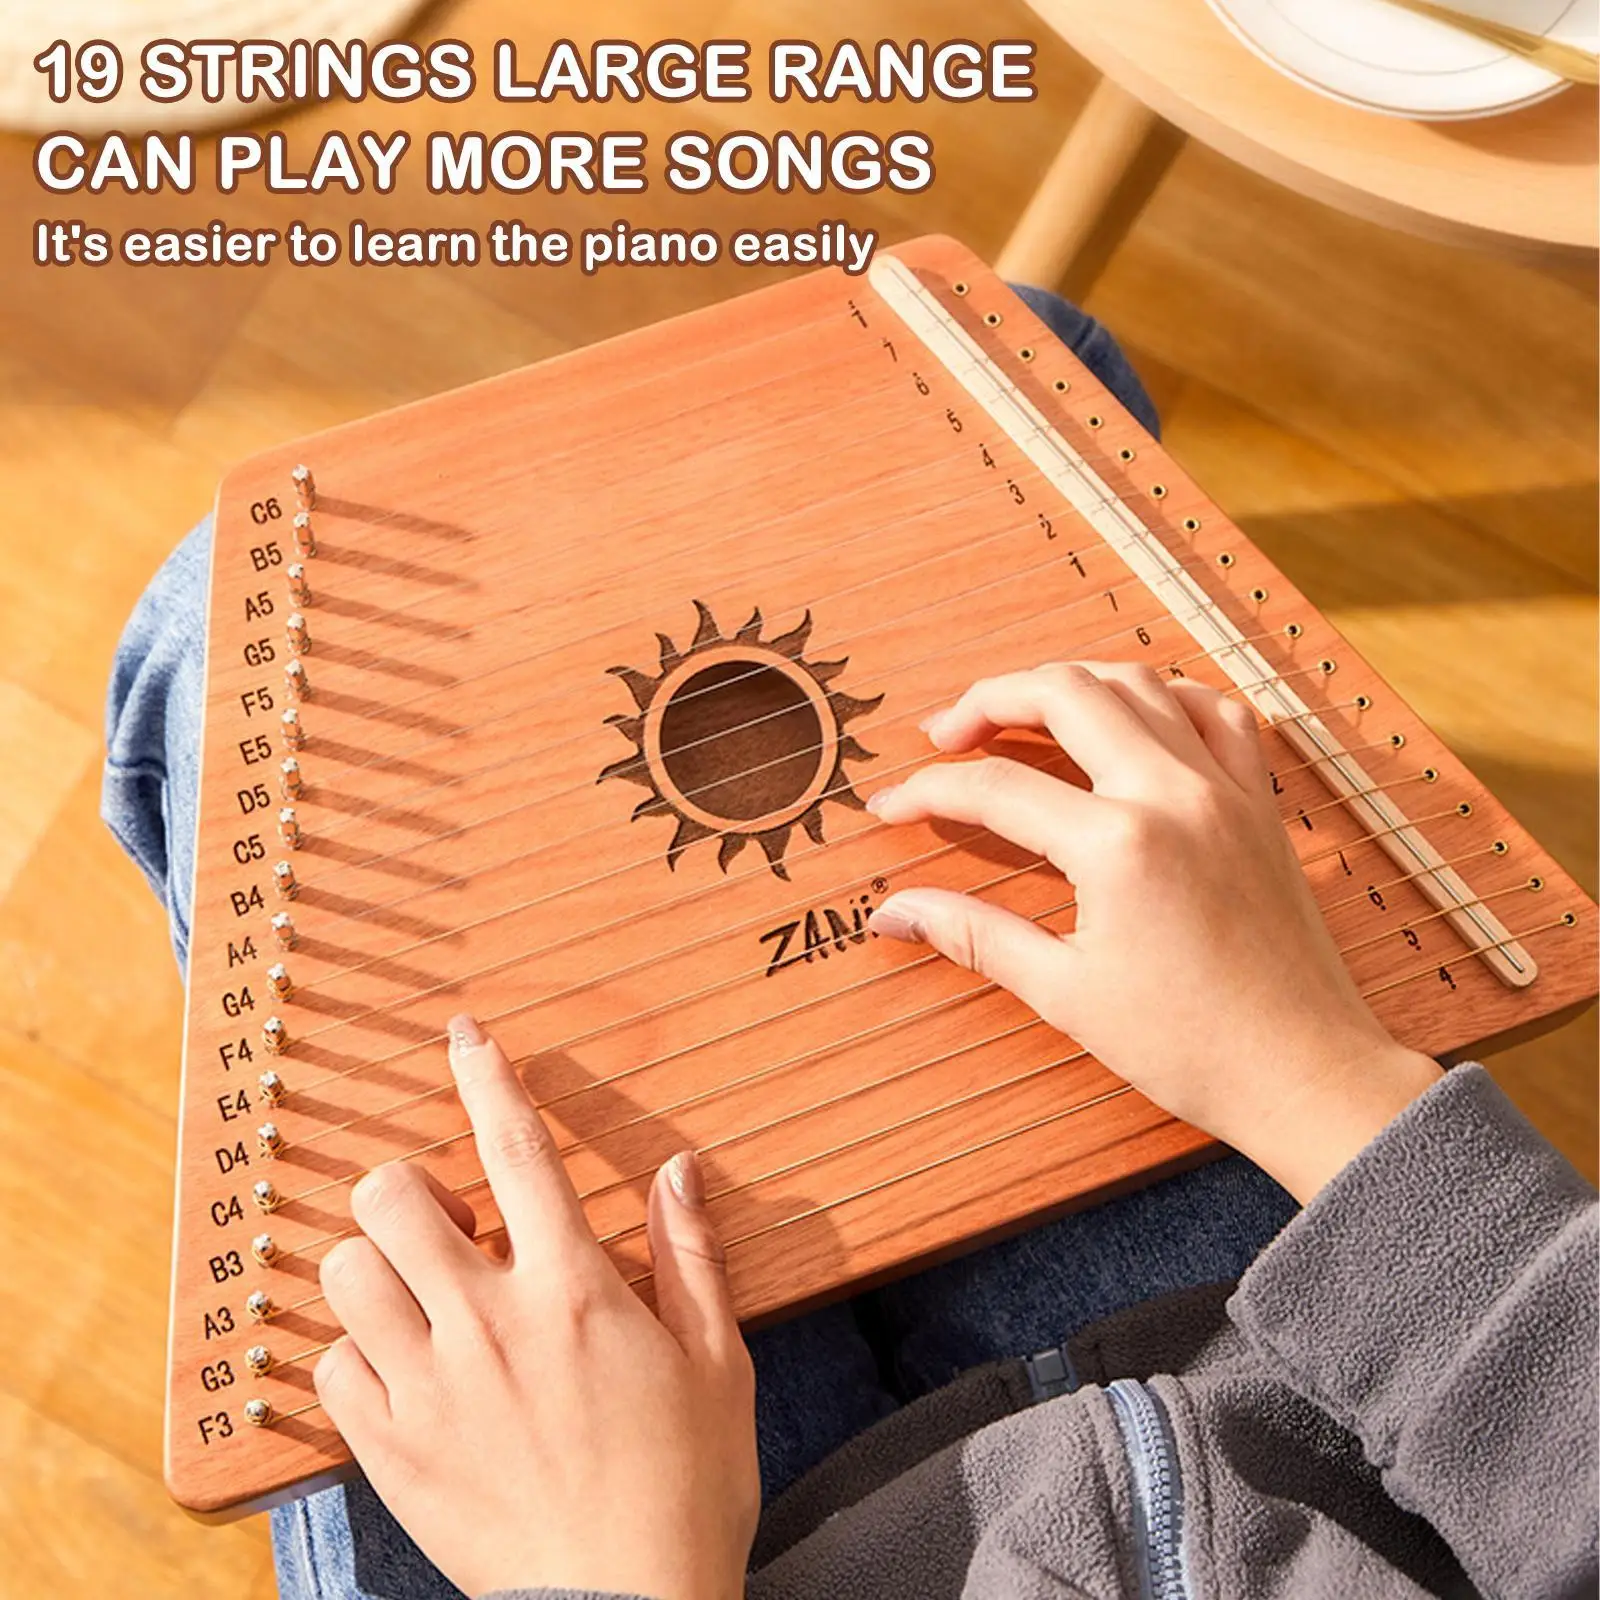 19 Strings Wooden Mahogany Lyre Harp Musical Instrument Stringed Instrument Lyre Harp With Tuning Tool For Beginner Gift R4K4